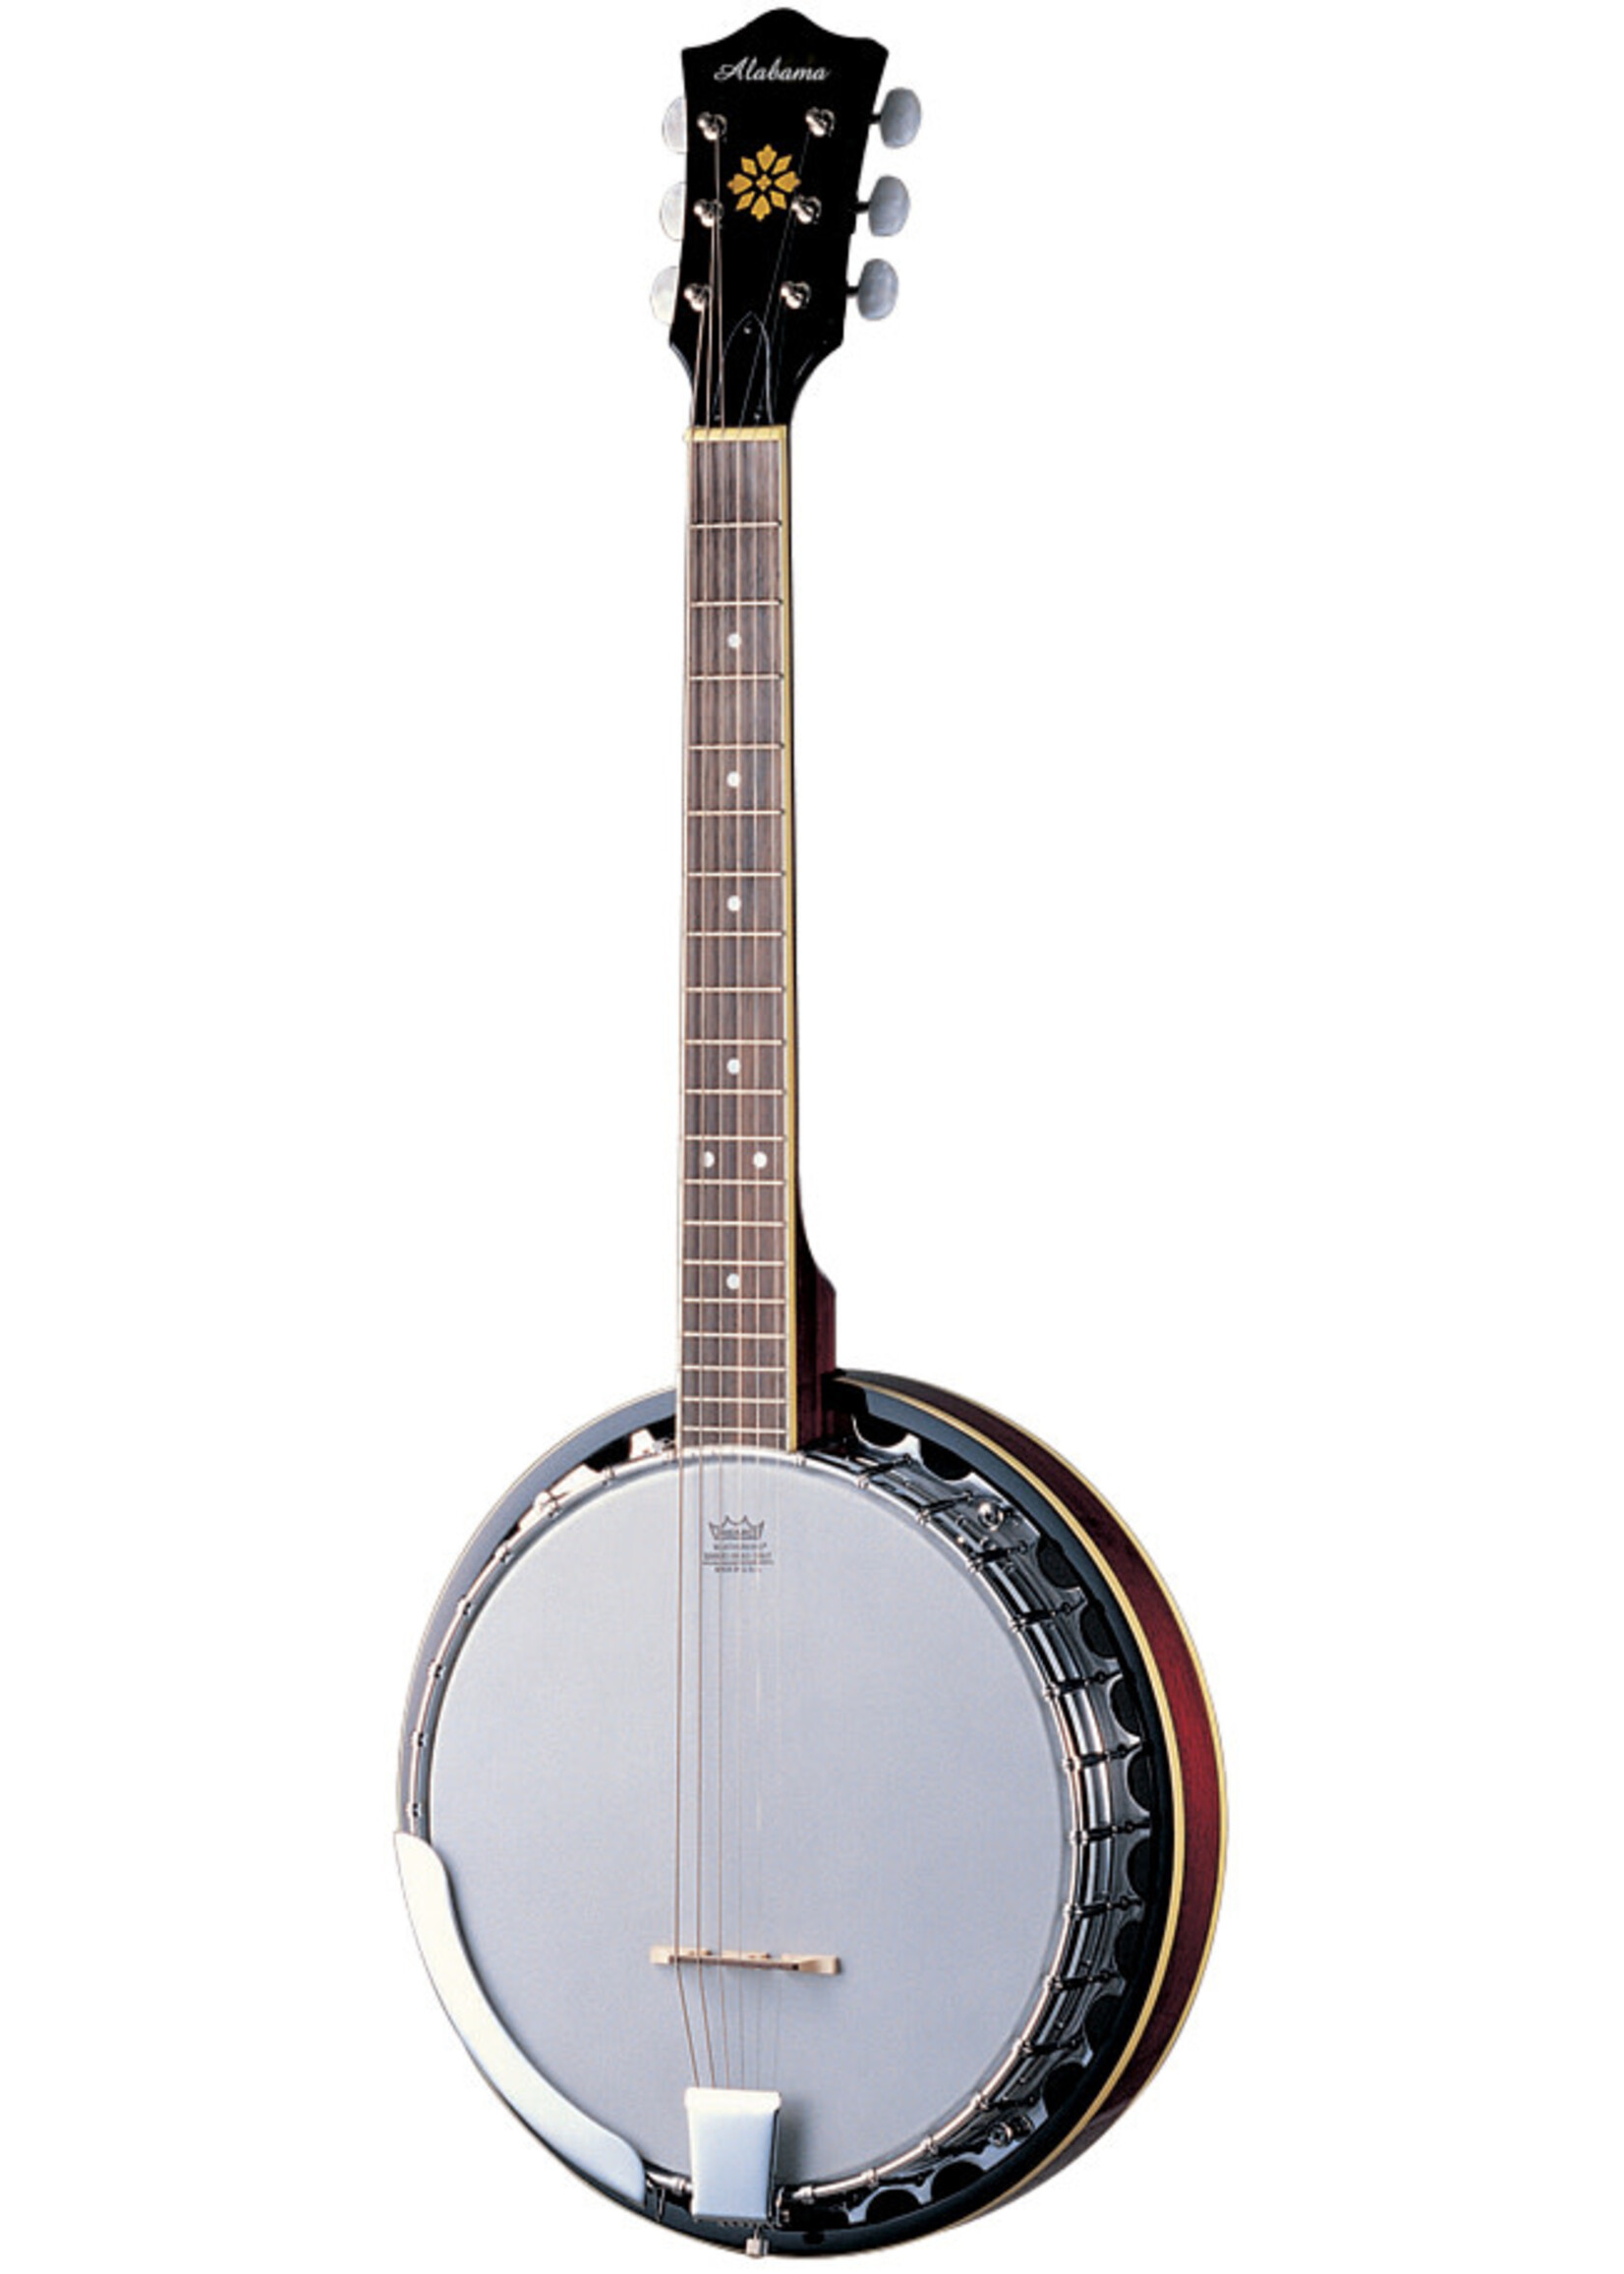 Alabama Alabama 6 String Banjo ALB36